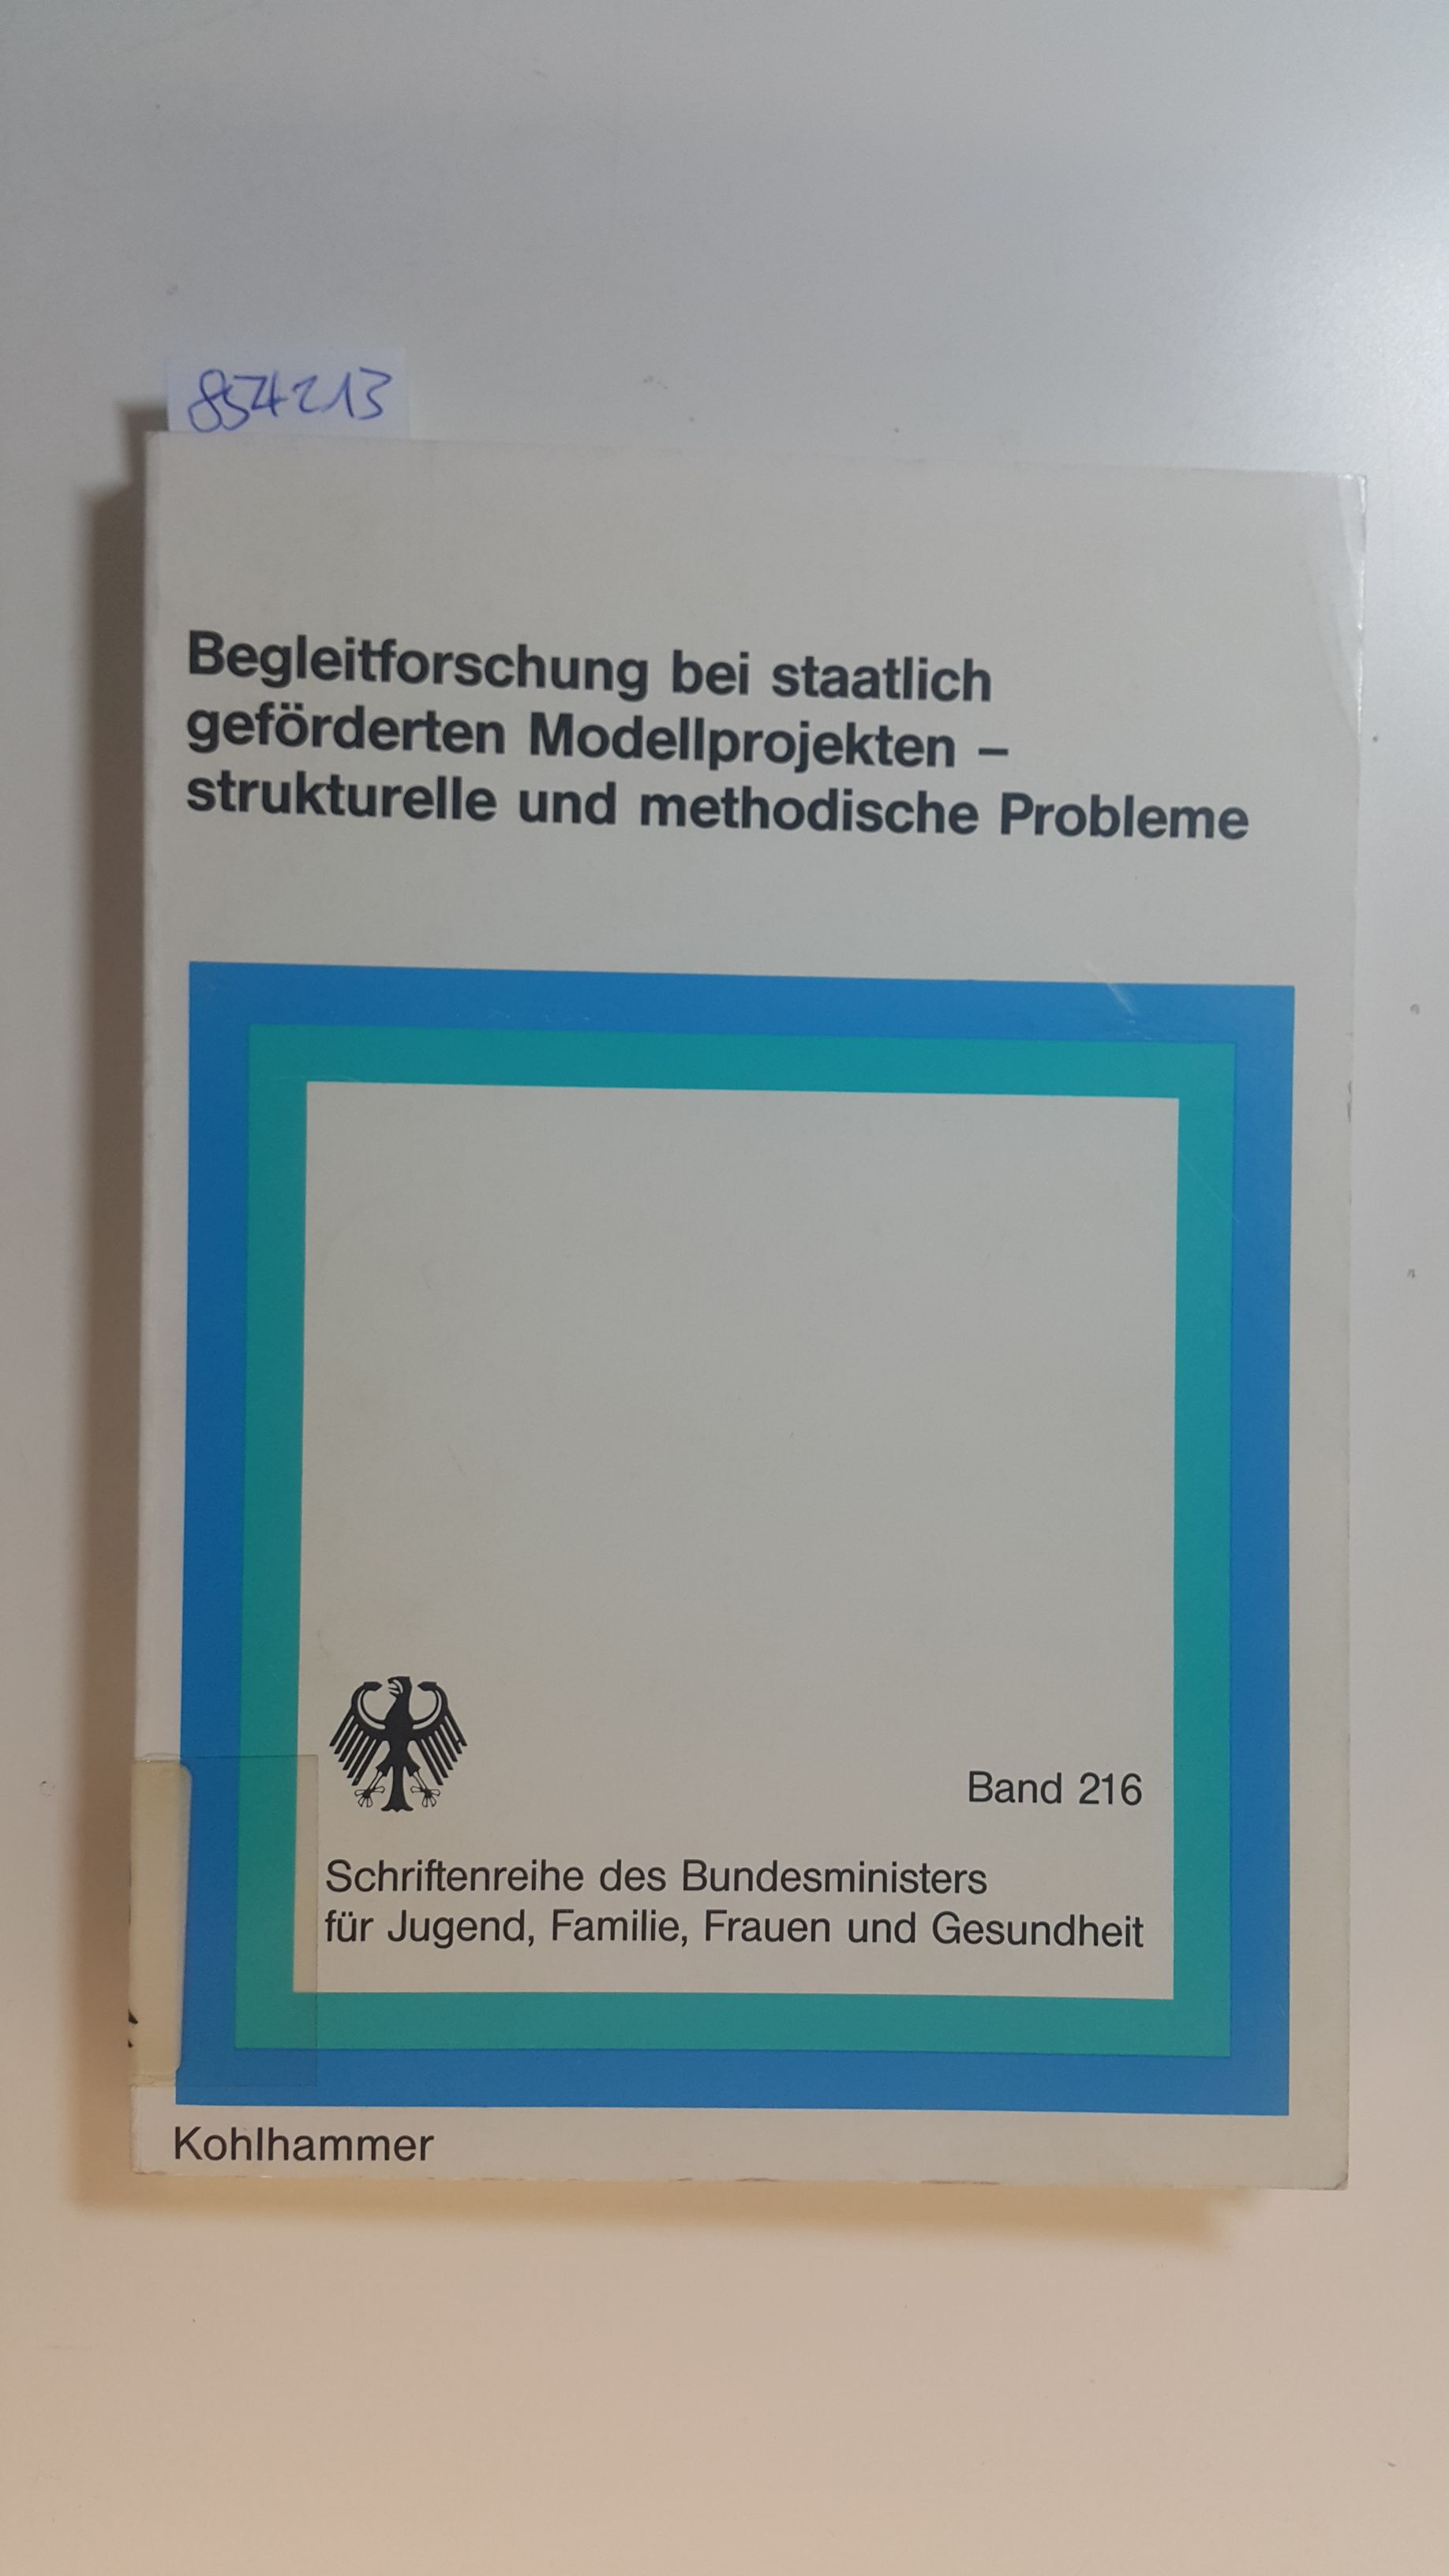 Begleitforschung bei staatlich geförderten Modellprojekten, strukturelle und methodische Probleme - Dietzel, Gottfried T. ; Troschke, Jürgen von